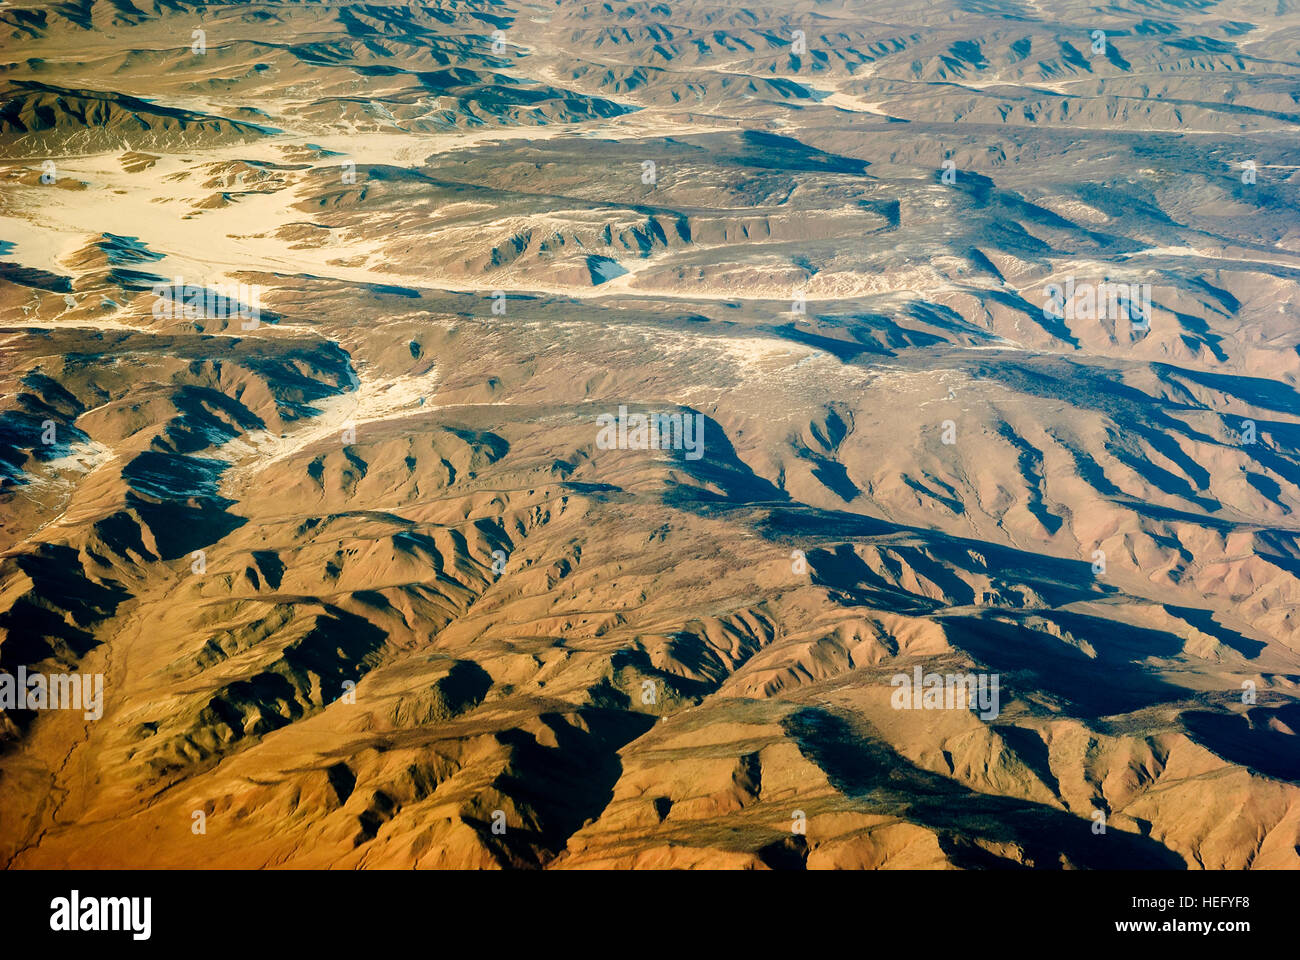 : Gobi desert with snow, Innere Mongolei, China Stock Photo